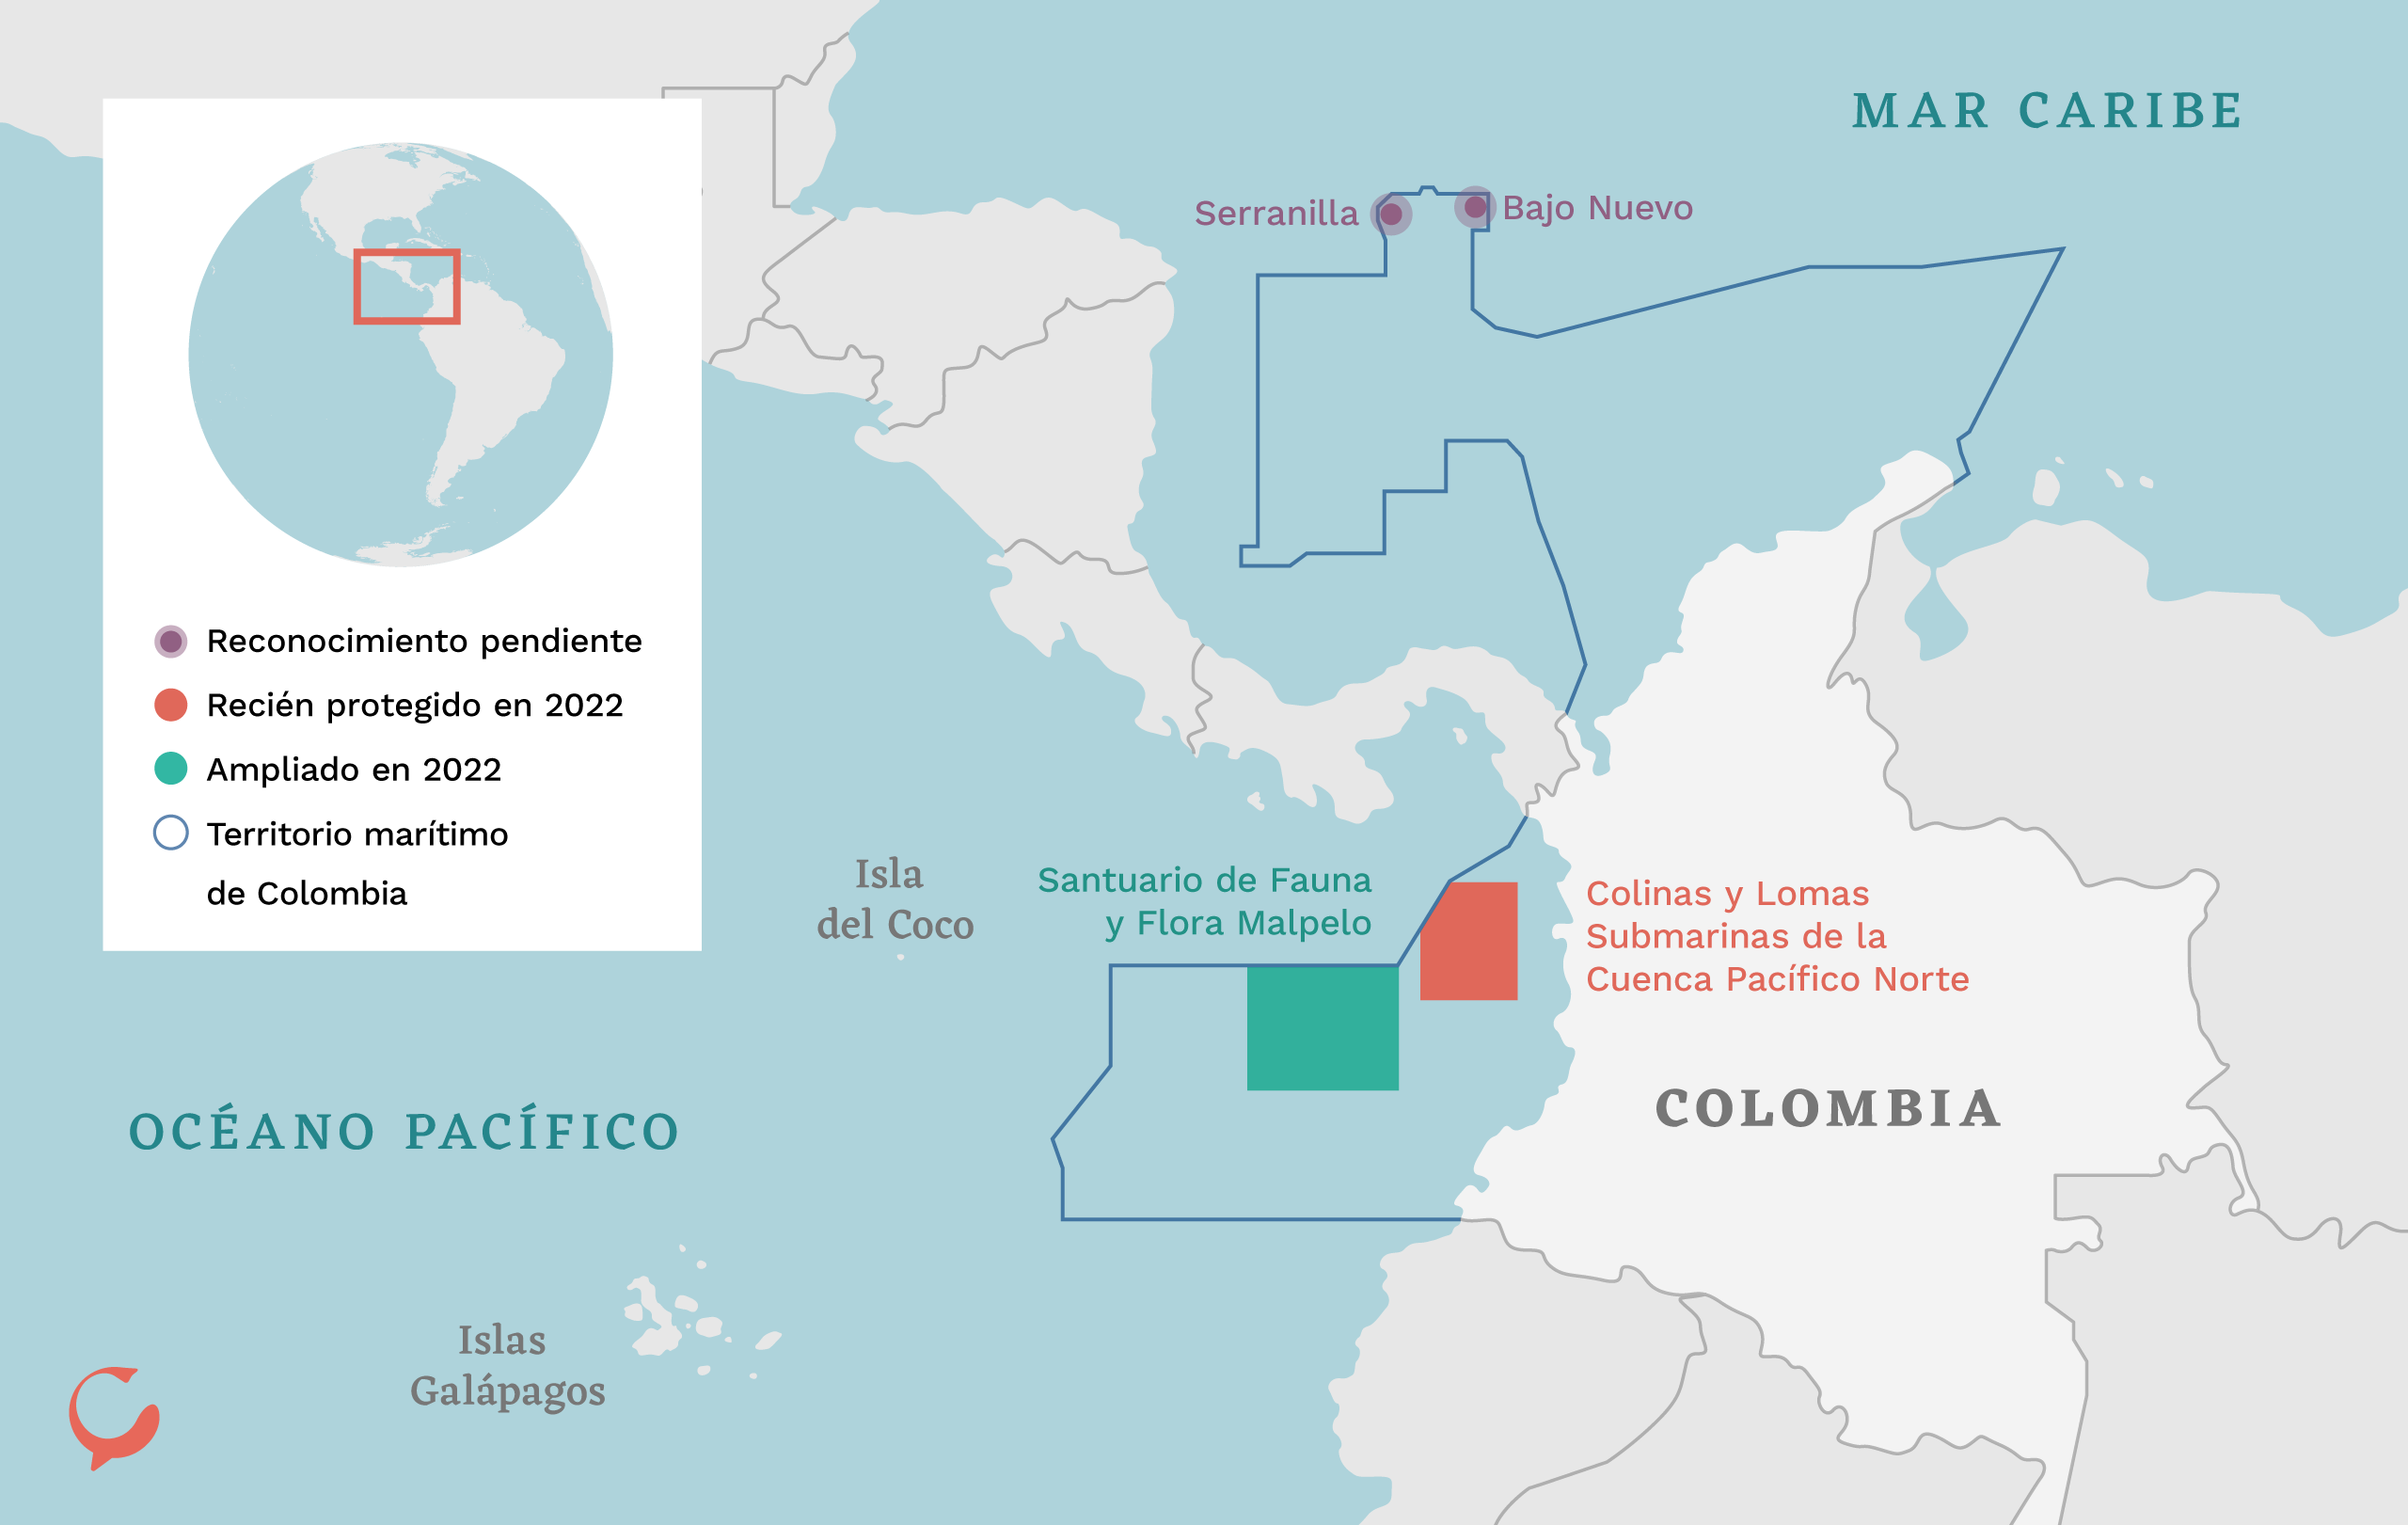 Mapa que muestra cuatro zonas marítimas protegidas en Colombia: Malpelo, Serranilla, Bajo Nuevo y las Colinas y Lomas submarinas de Bajo Norte 